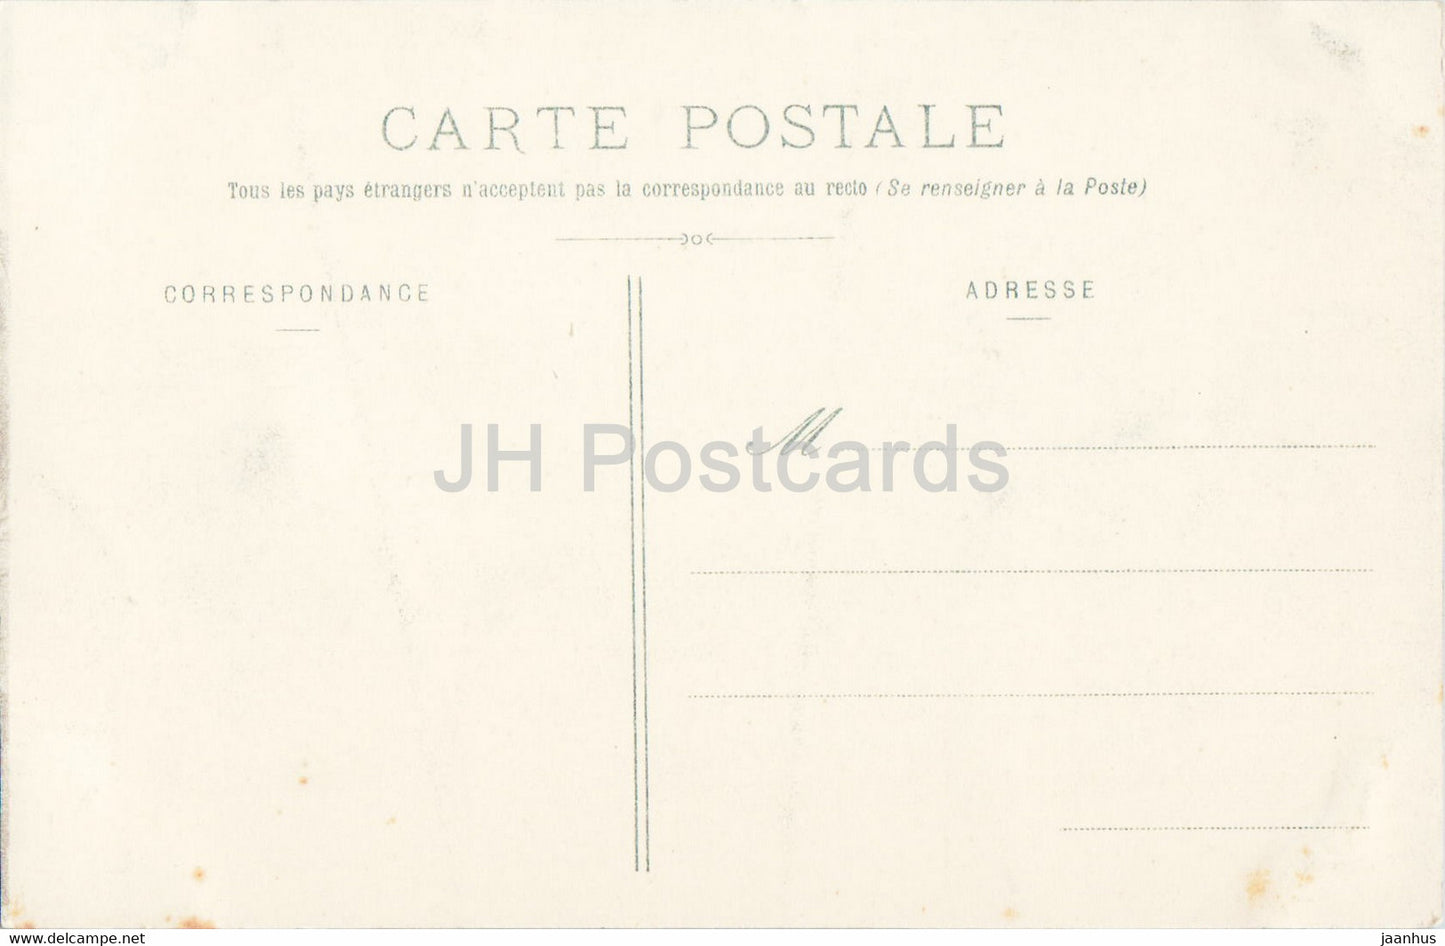 Nancy - Hôtel de Ville - 1 - carte postale ancienne - France - inutilisée